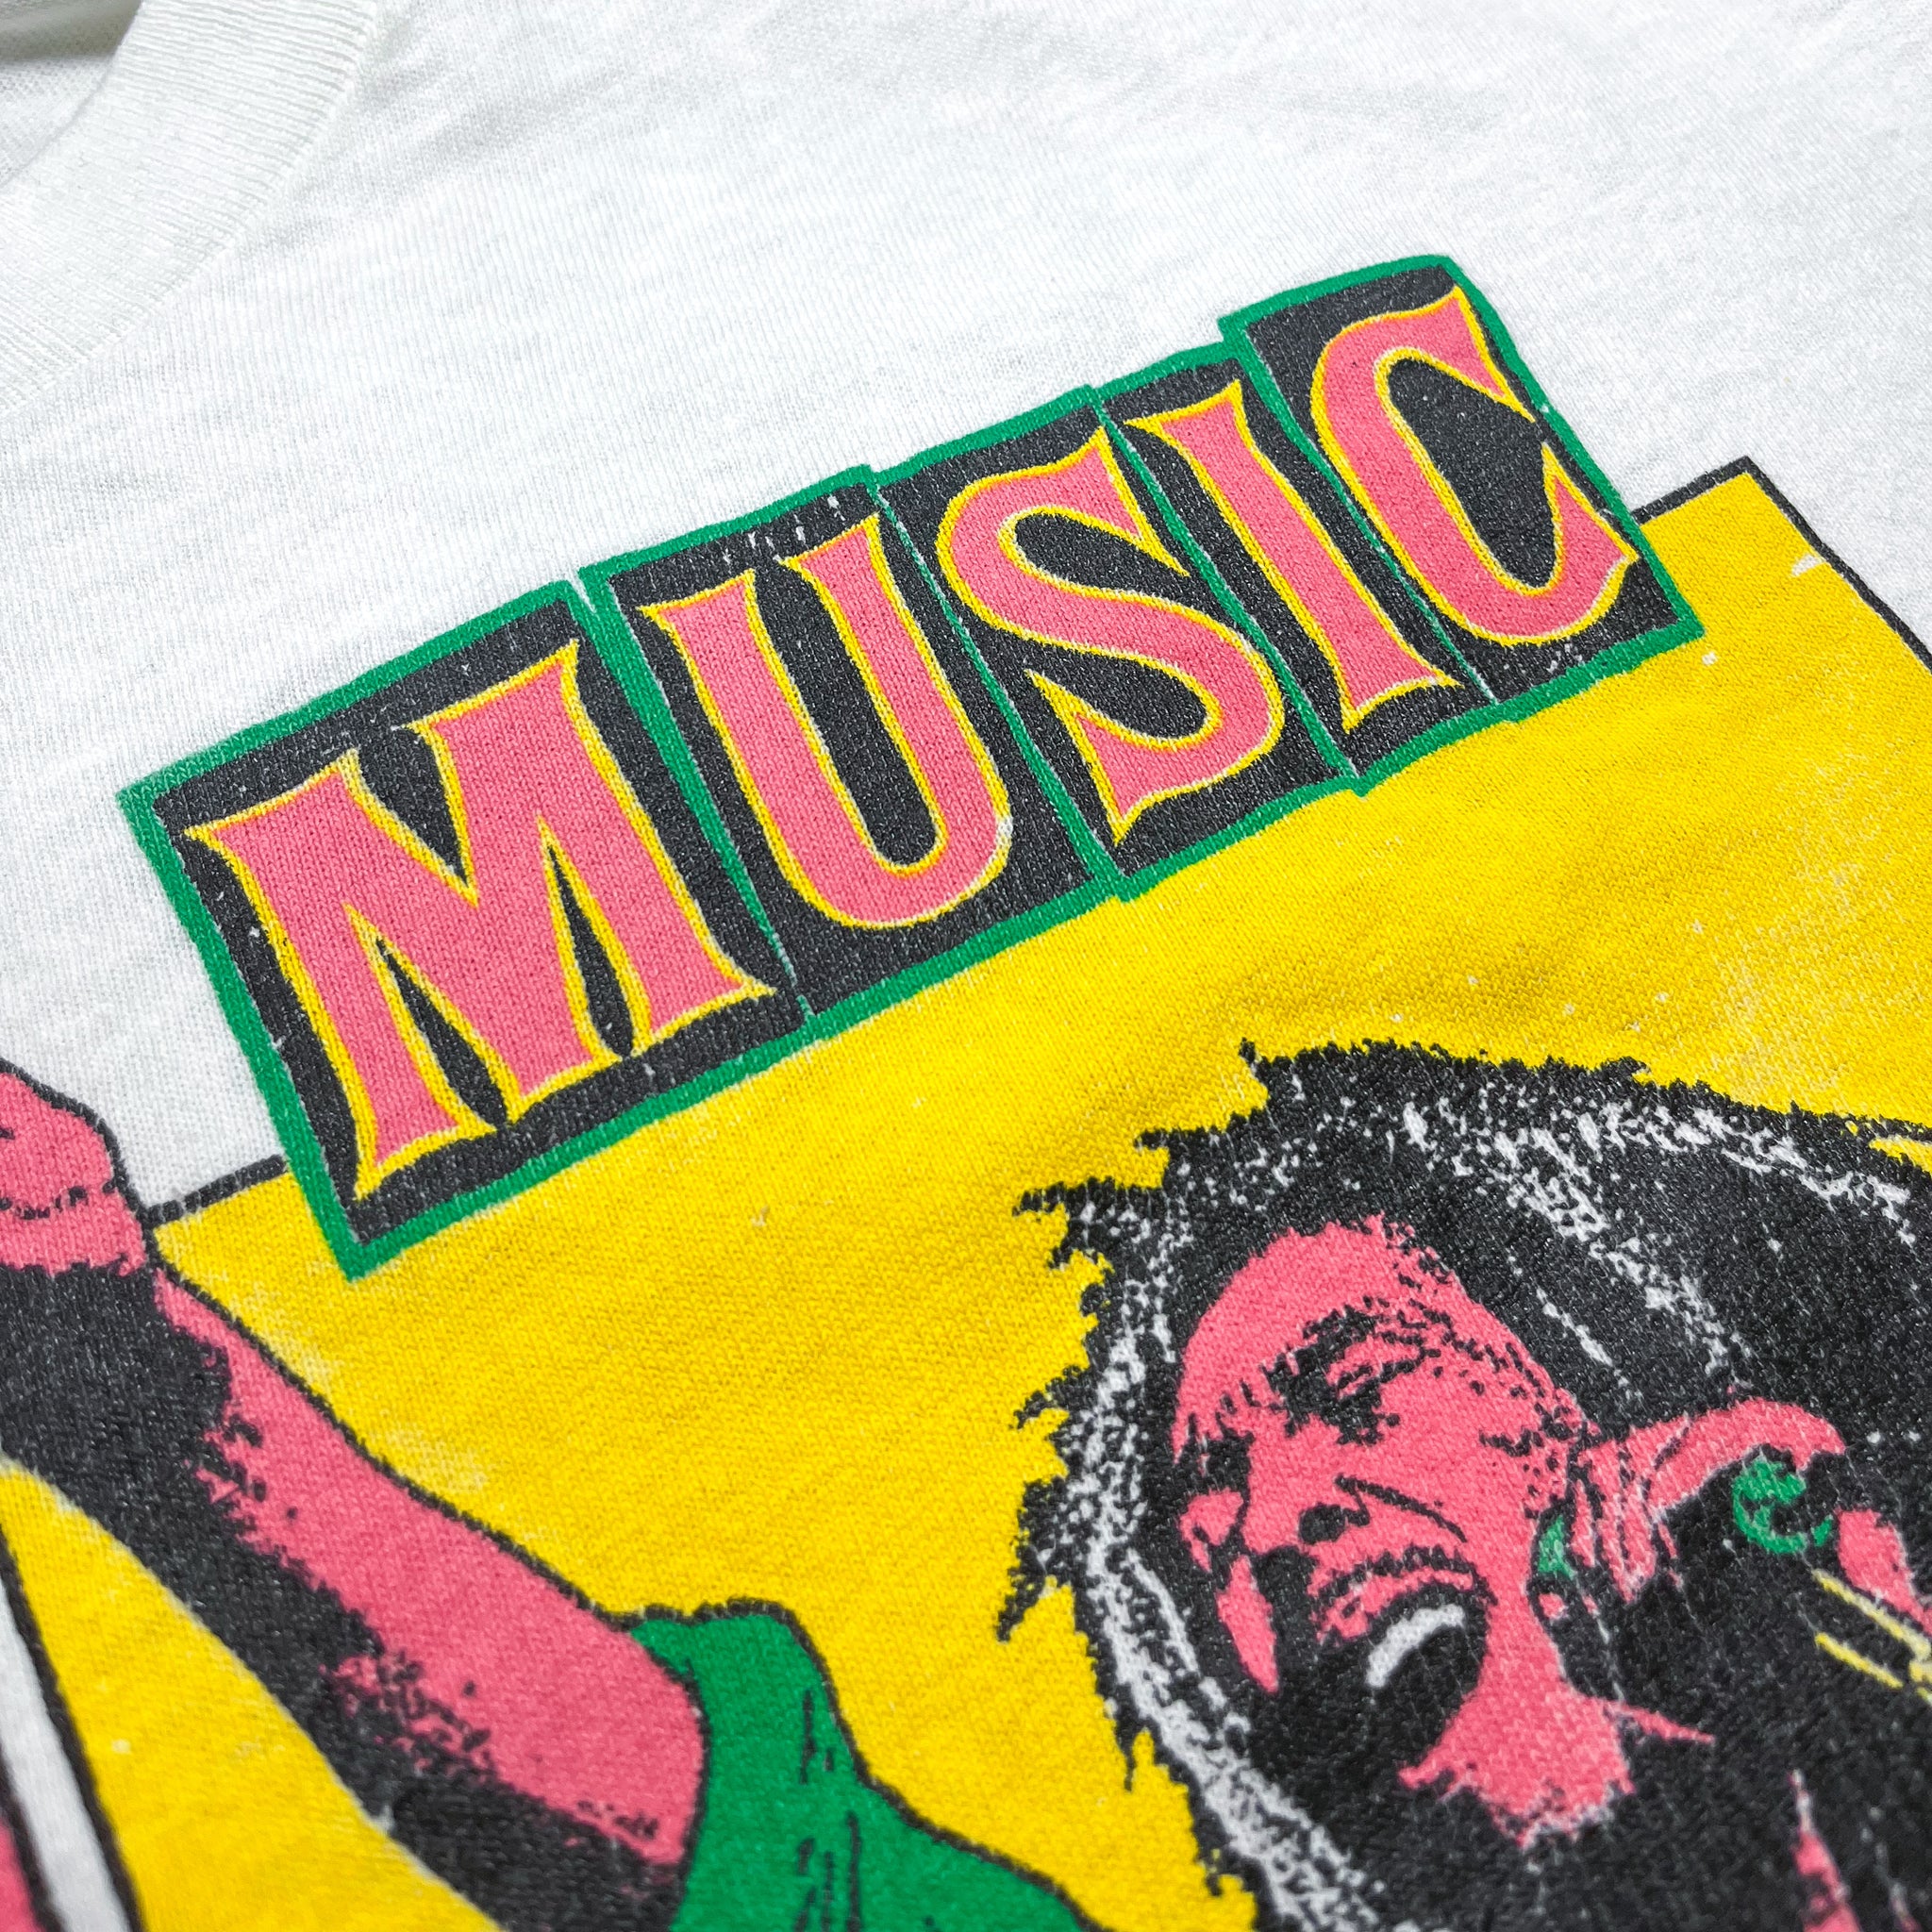 Bob Marley Vintage Tee - Rebel Music Pop Art